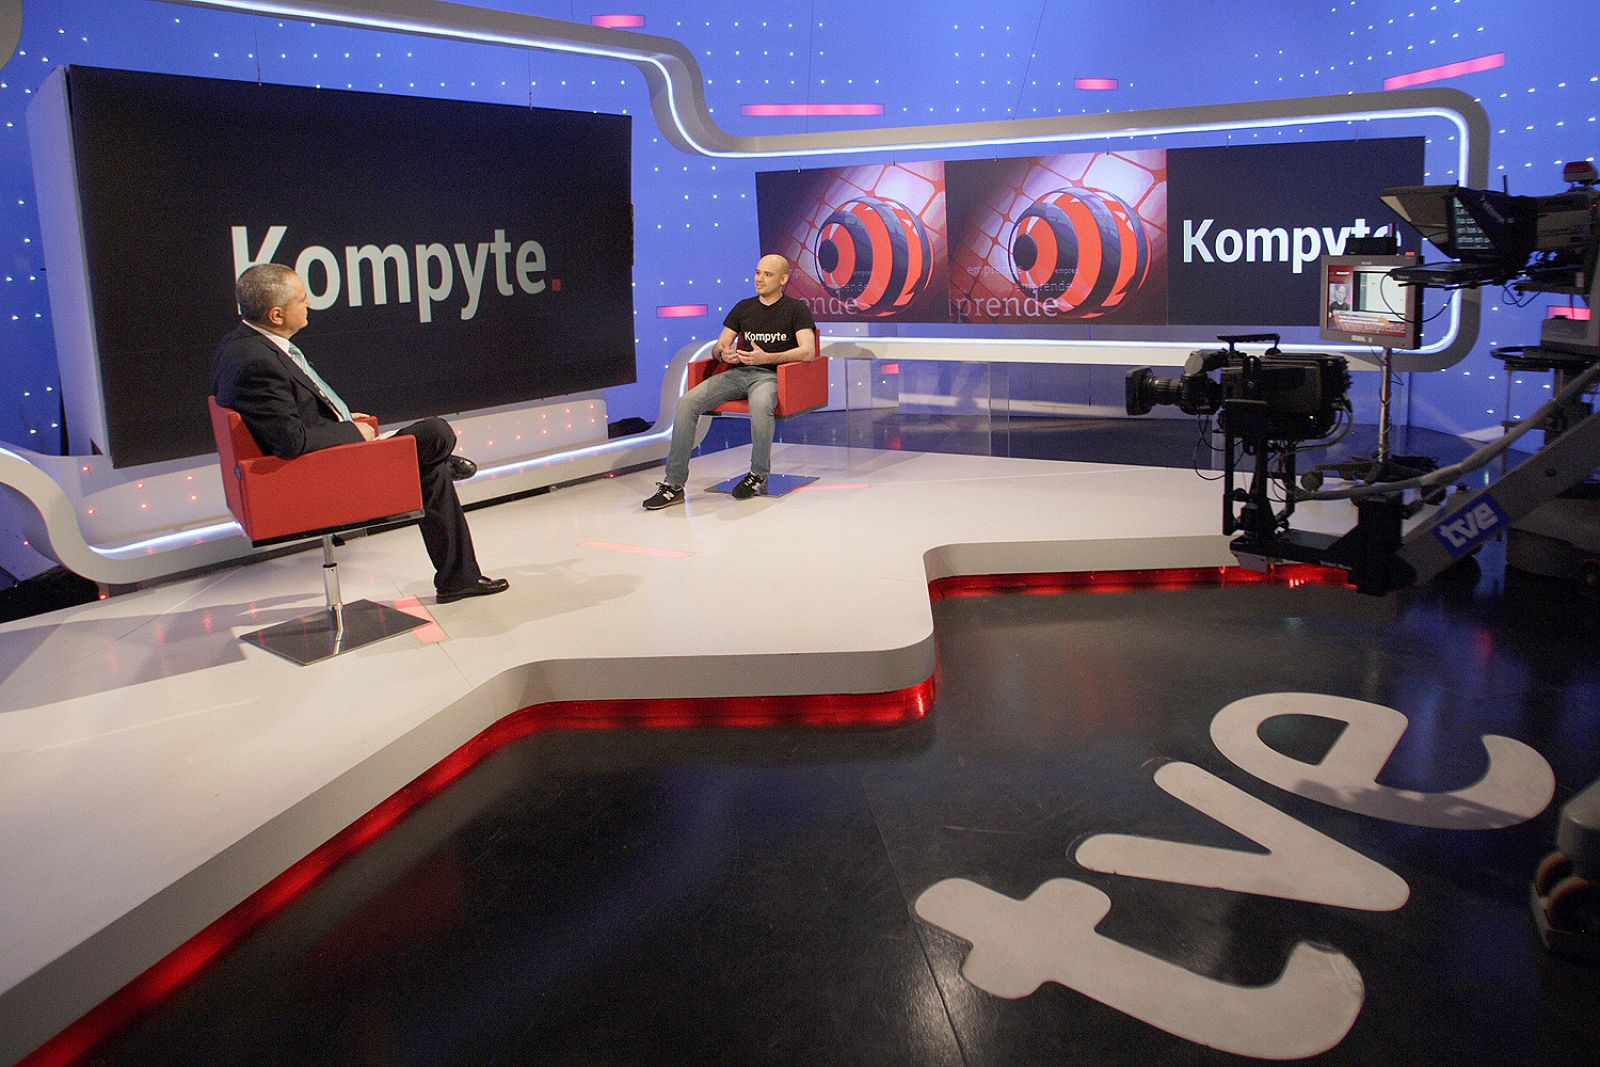 'Emprende' entrevista a Kompyte